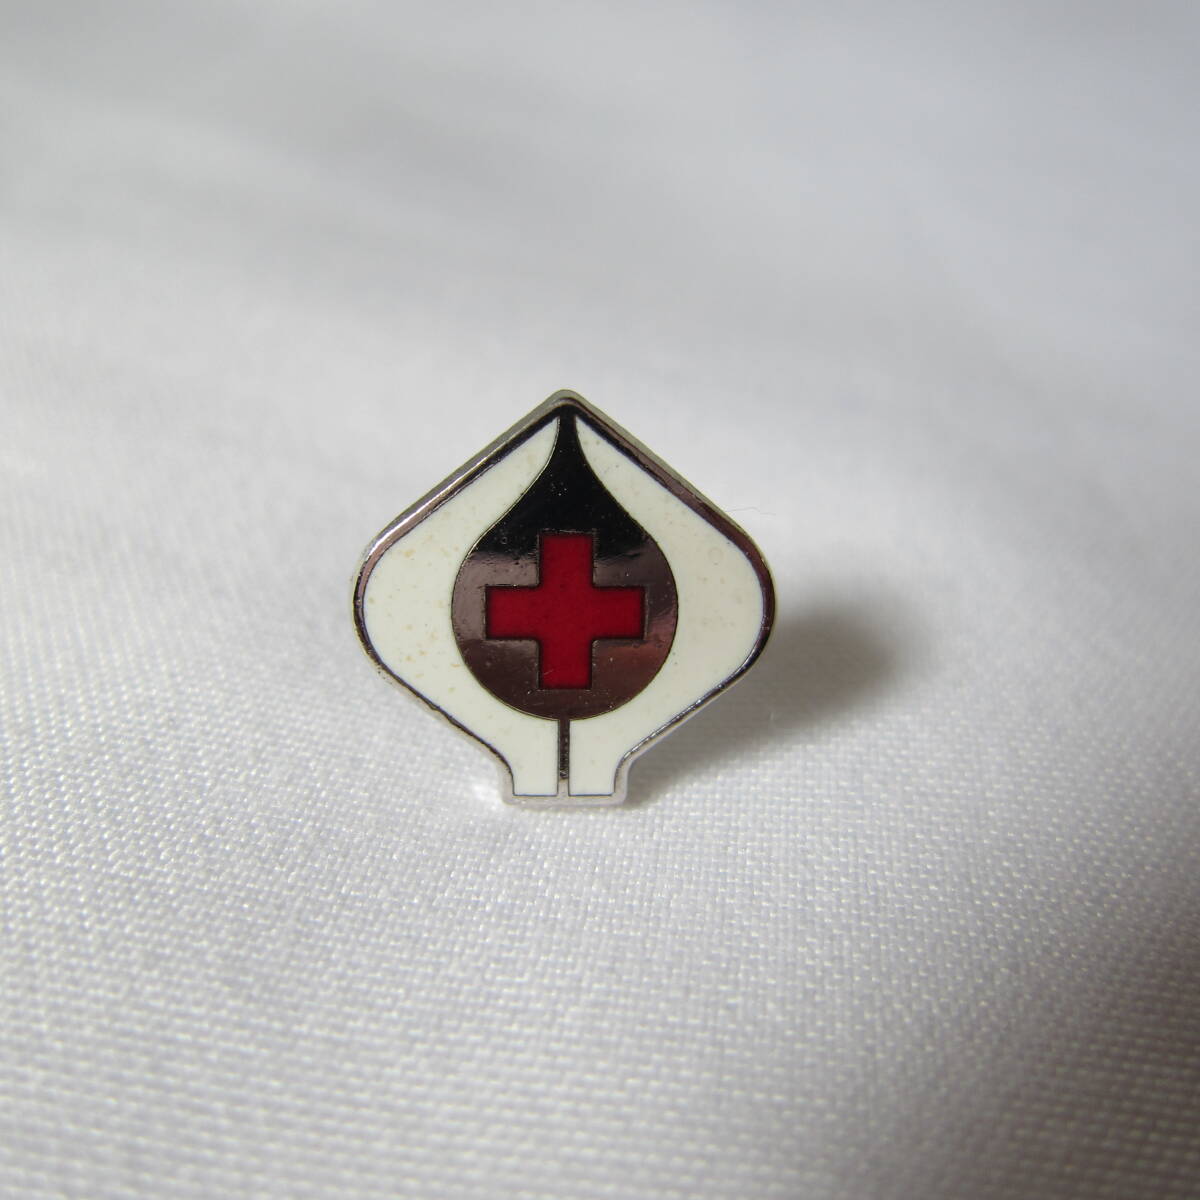  Japan red 10 character company pin badge 